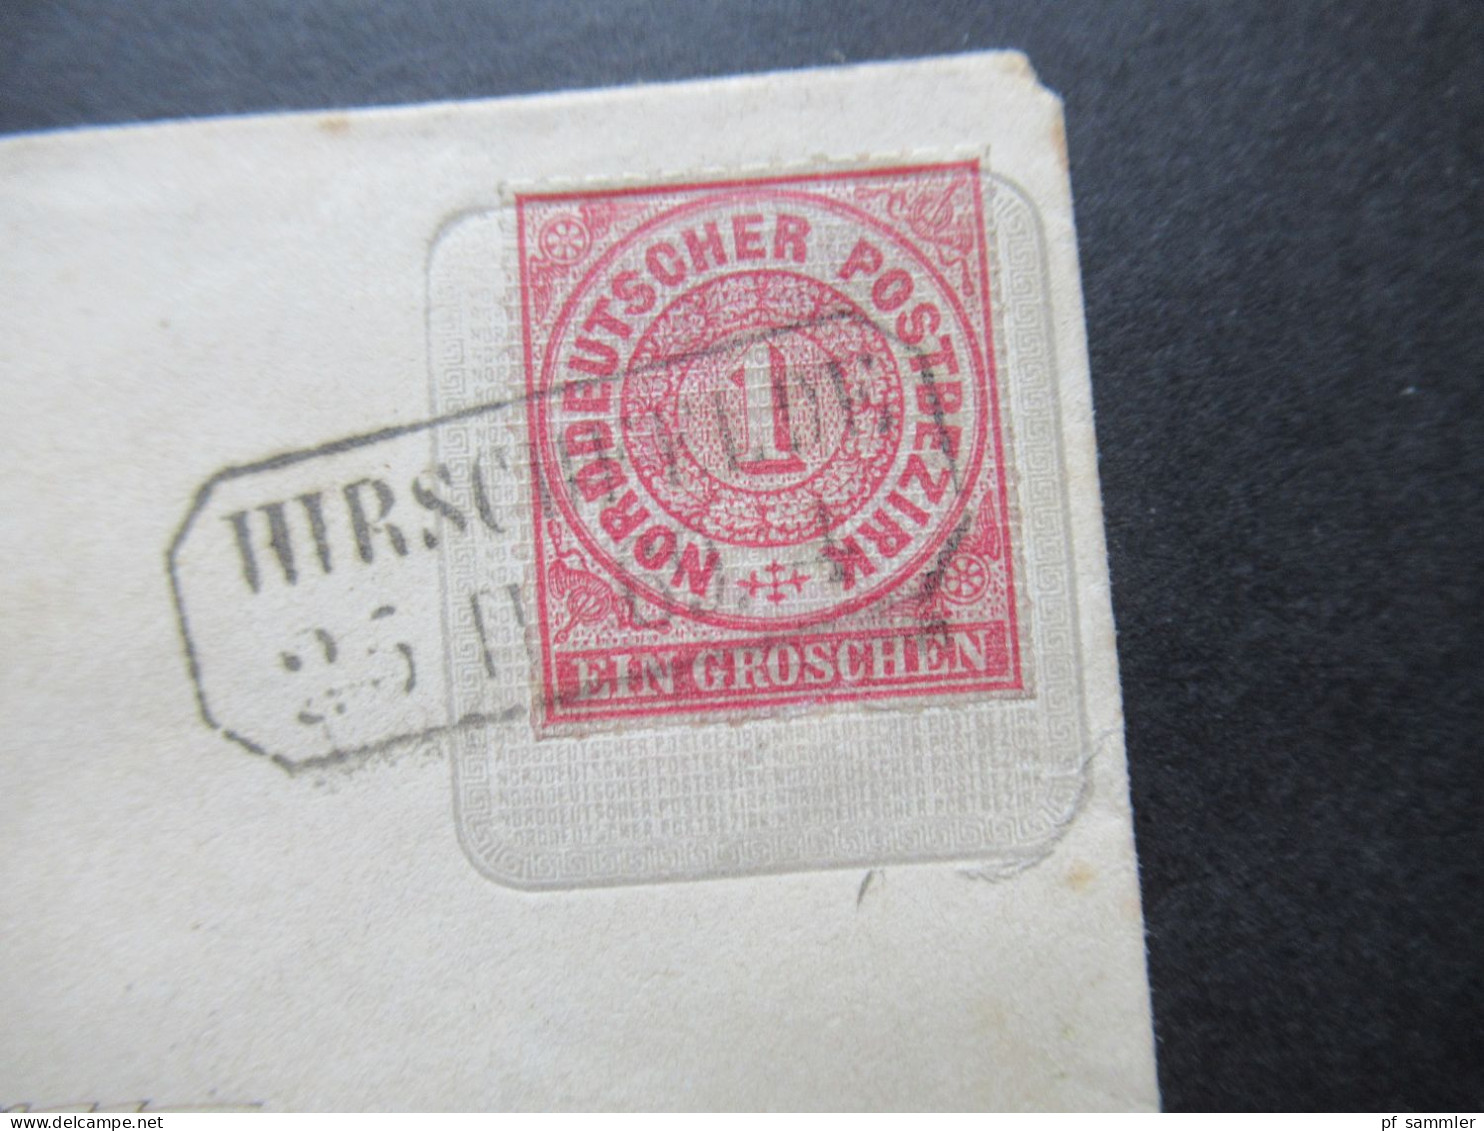 AD NDP 1869 GA Umschlag 1 Groschen Auf Umschlag Von Preußen U 49 A Stempel Ra2 Hirschfelde - Ganzsachen